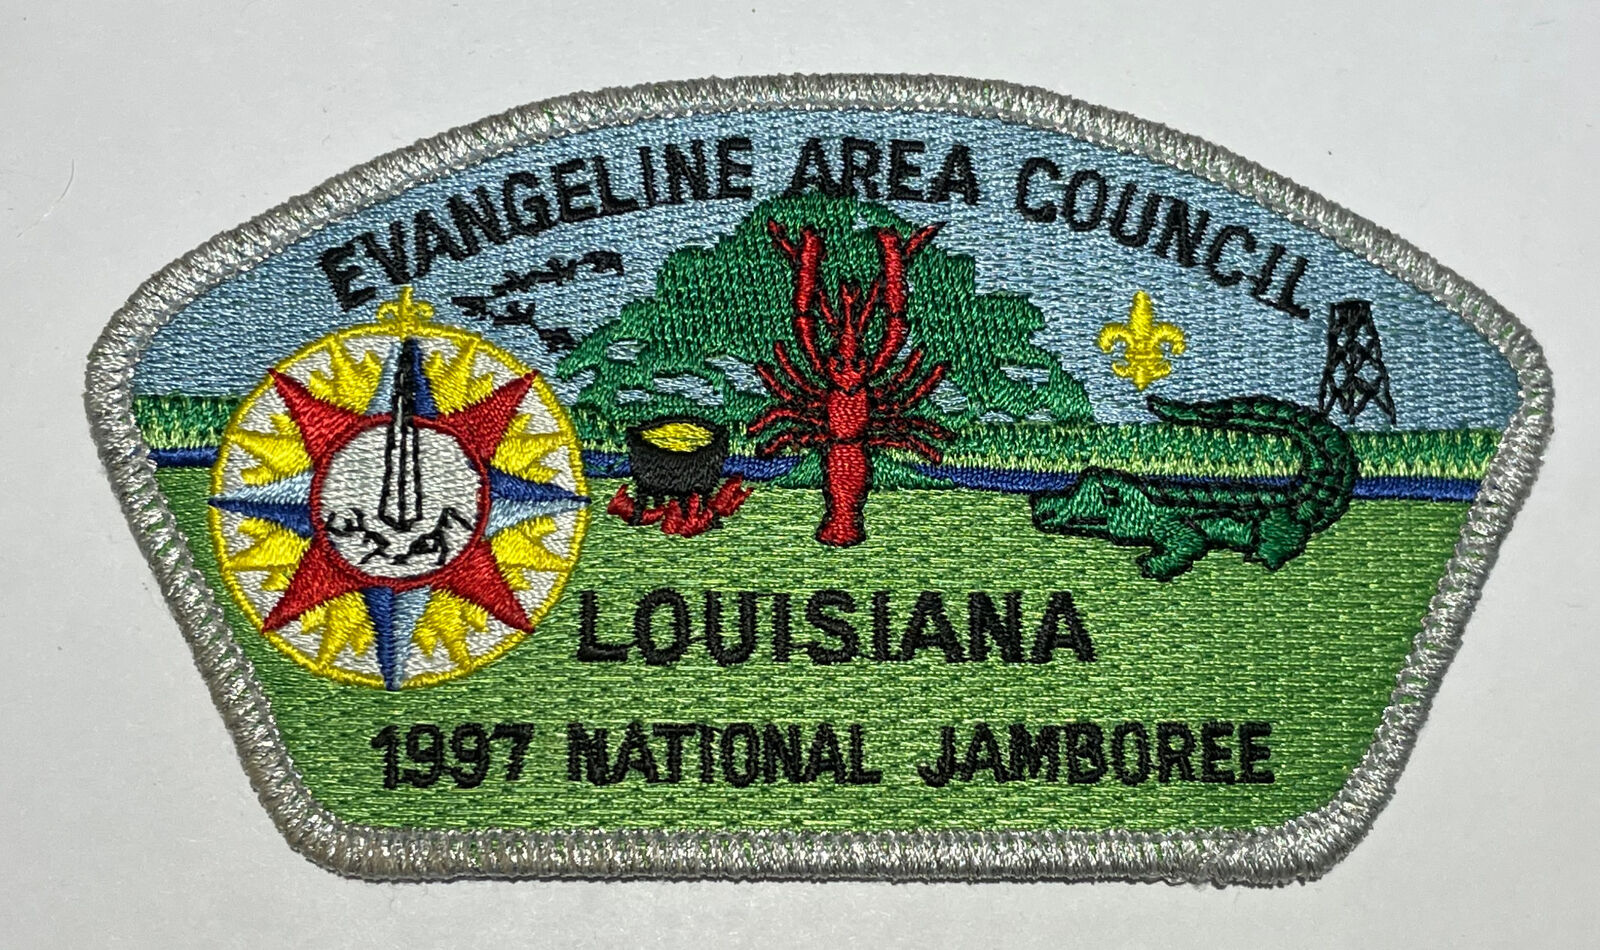 Evangeline Area Council Strip Boy Scout CSP 1997 National Jamboree JSP CC0